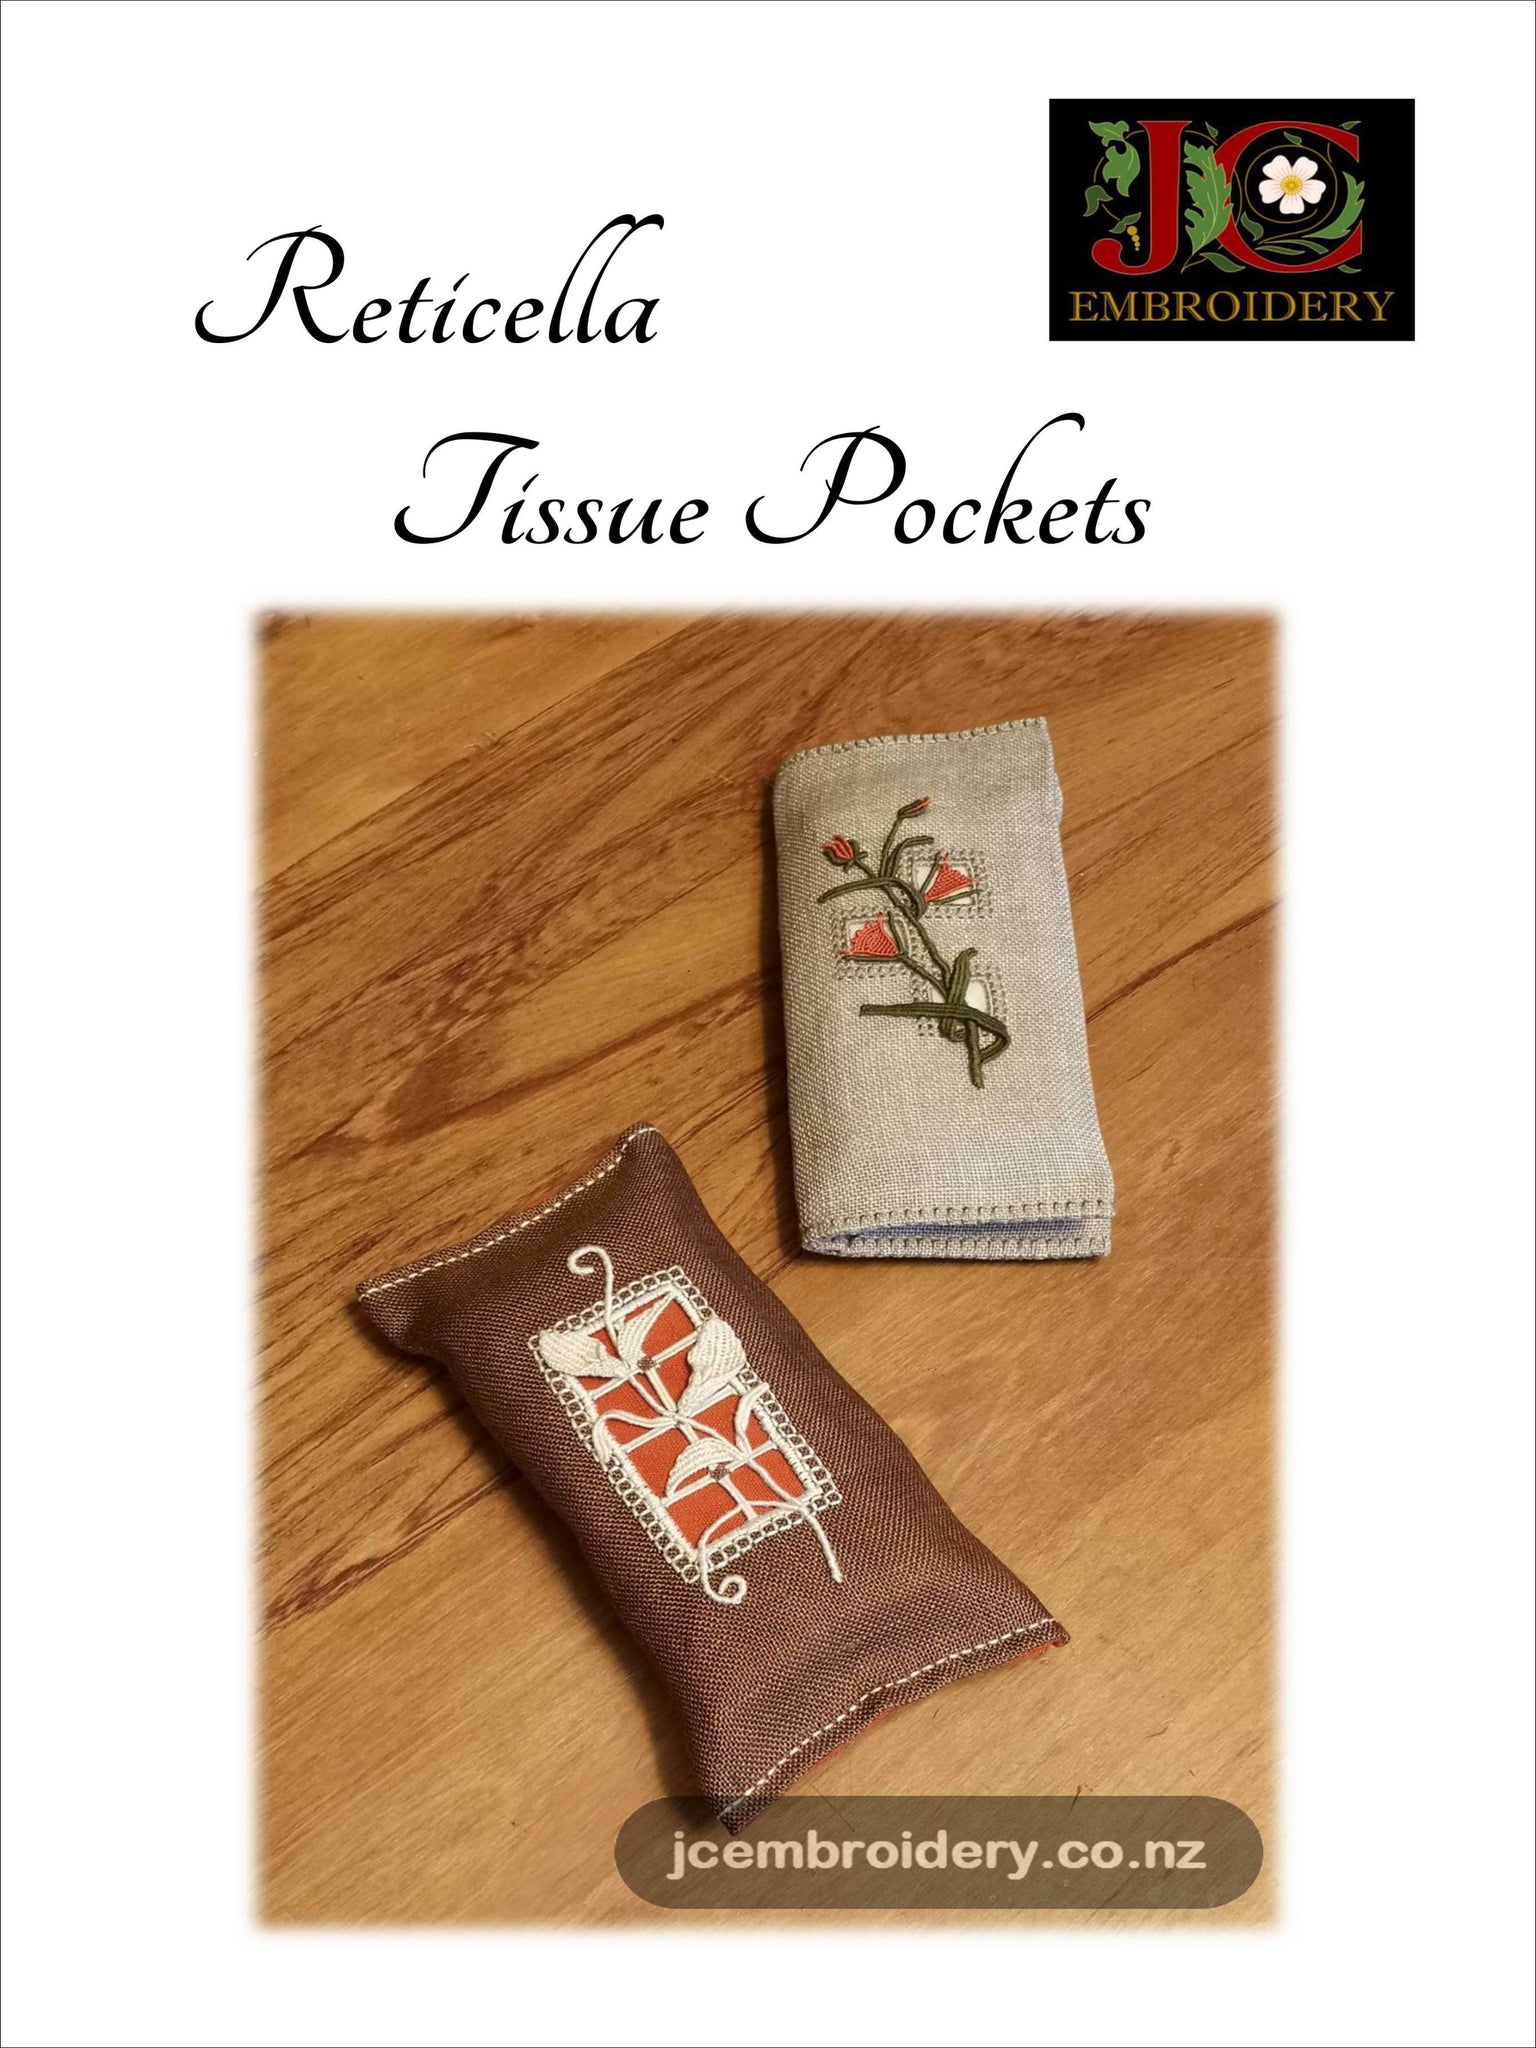 Reticella Tissue Pockets